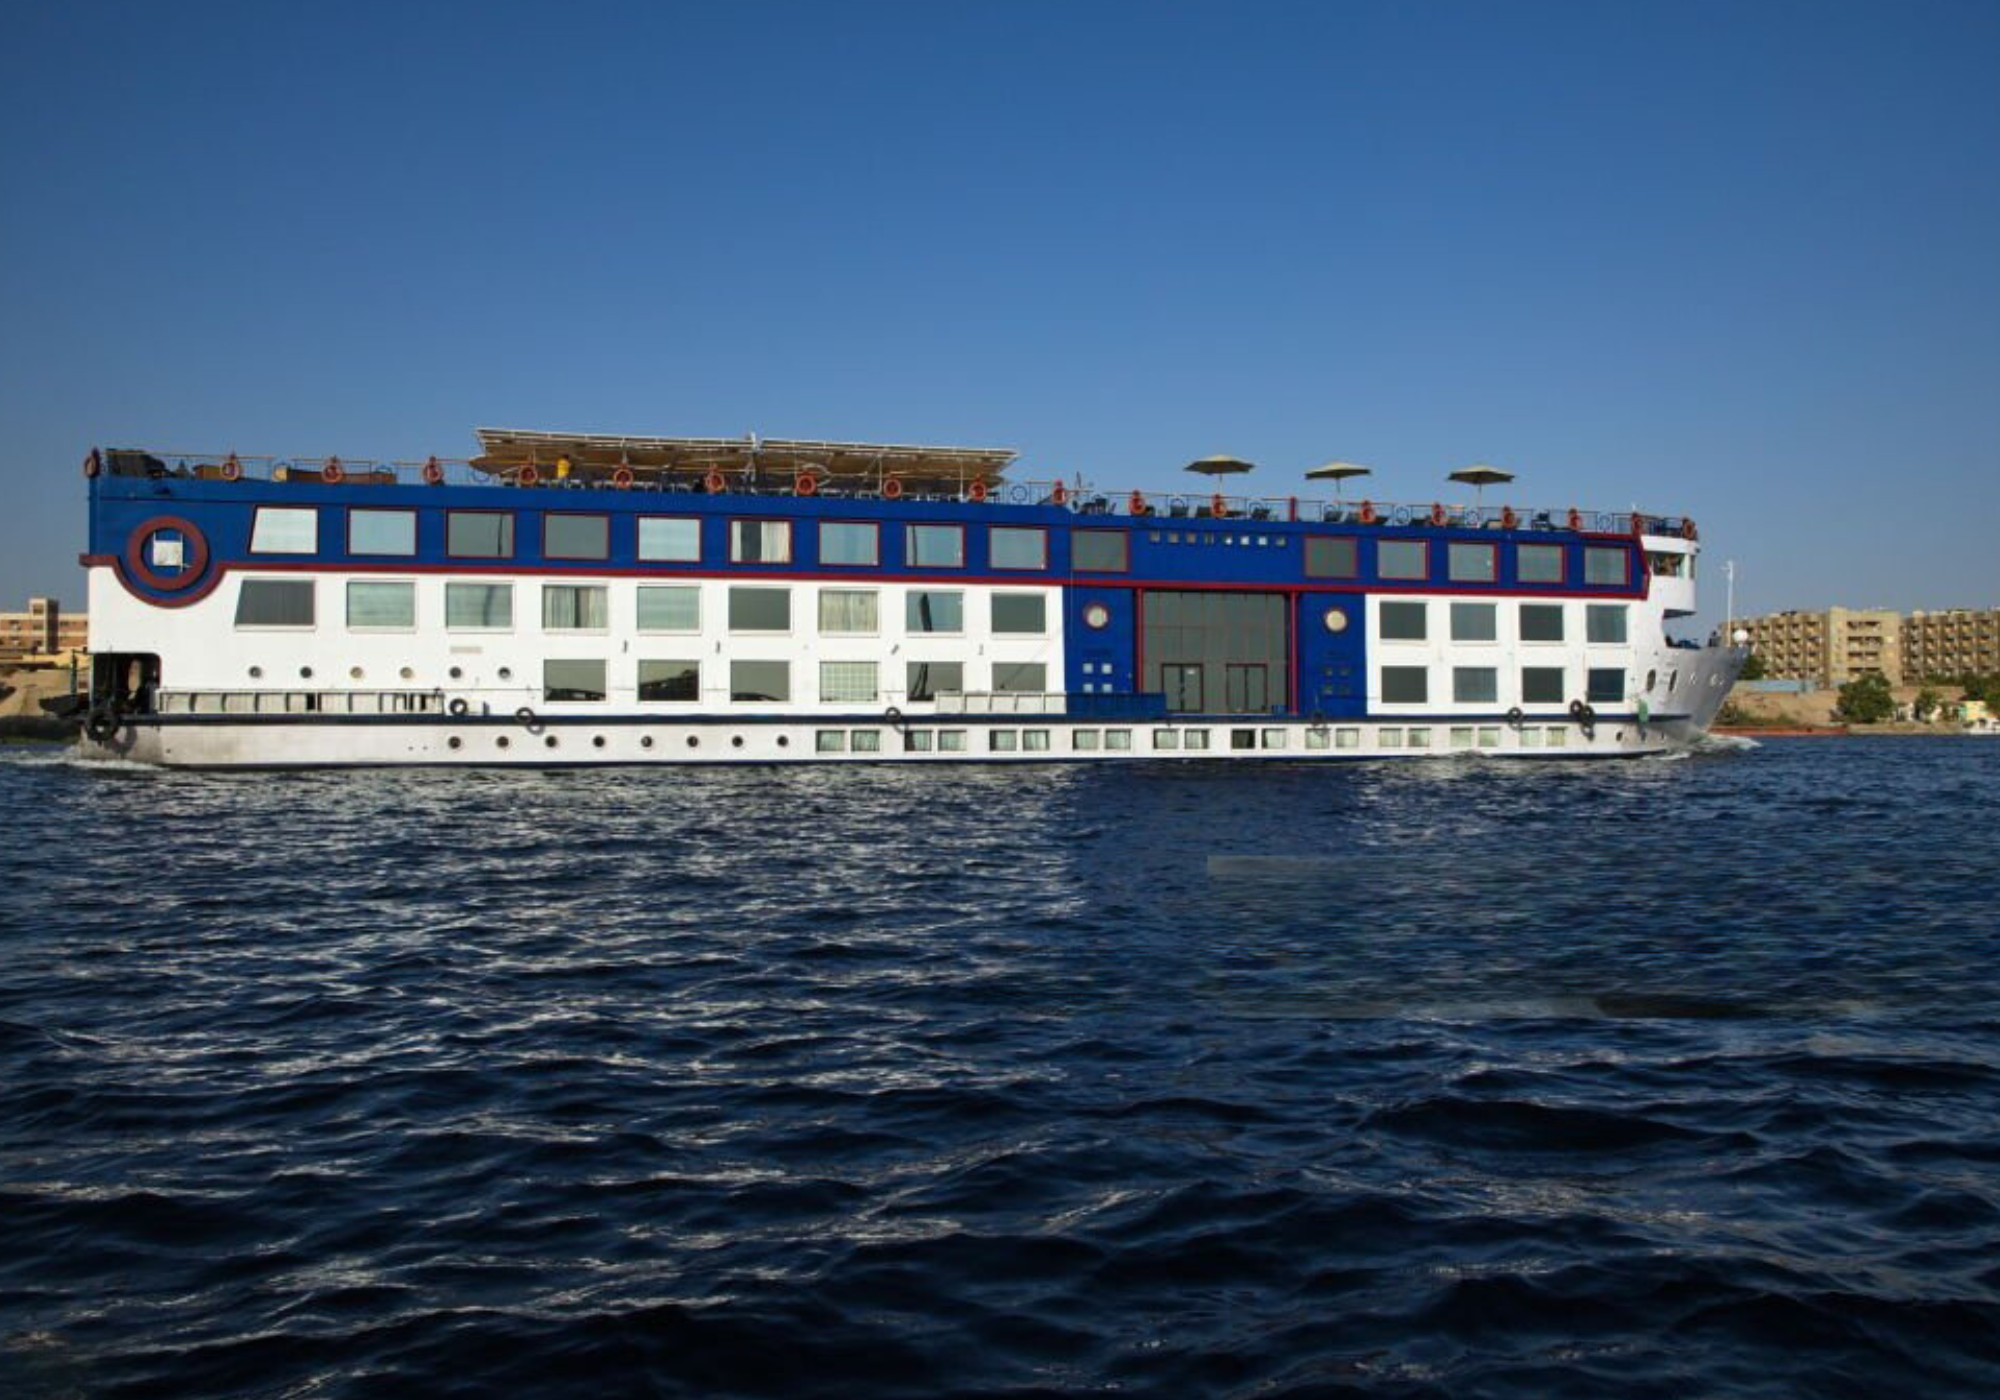 The luxurious MS Al Kahila Nile Cruise ship sailing on the Nile River